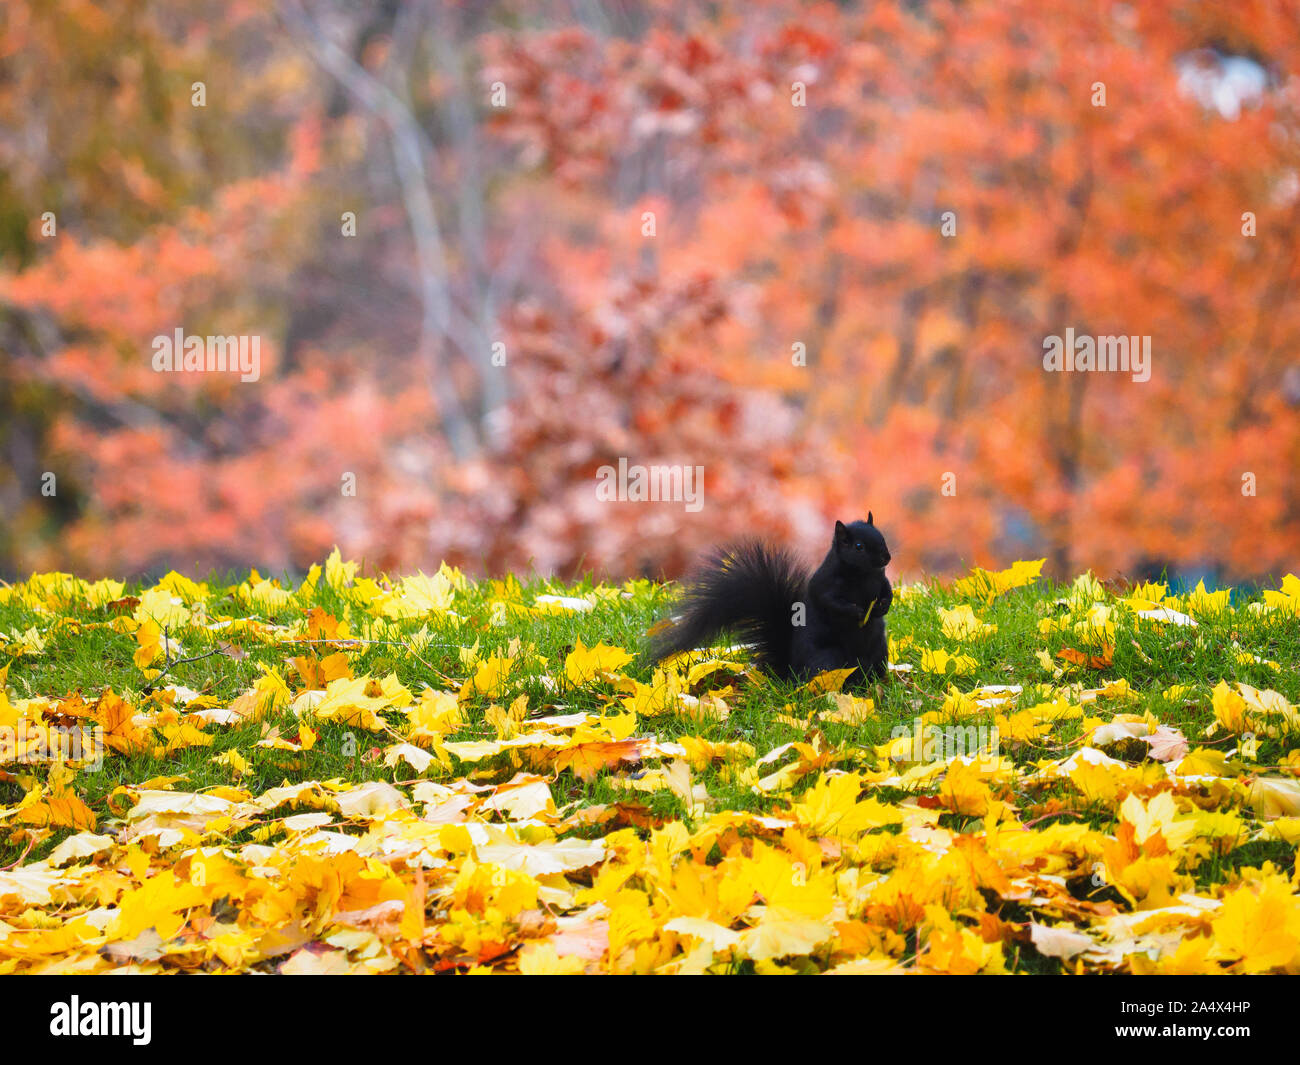 Carino scoiattolo nero seduto su erba in autunno. Colore rosso lascia in background e il giallo delle foglie di acero di zucchero in primo piano. Foto Stock